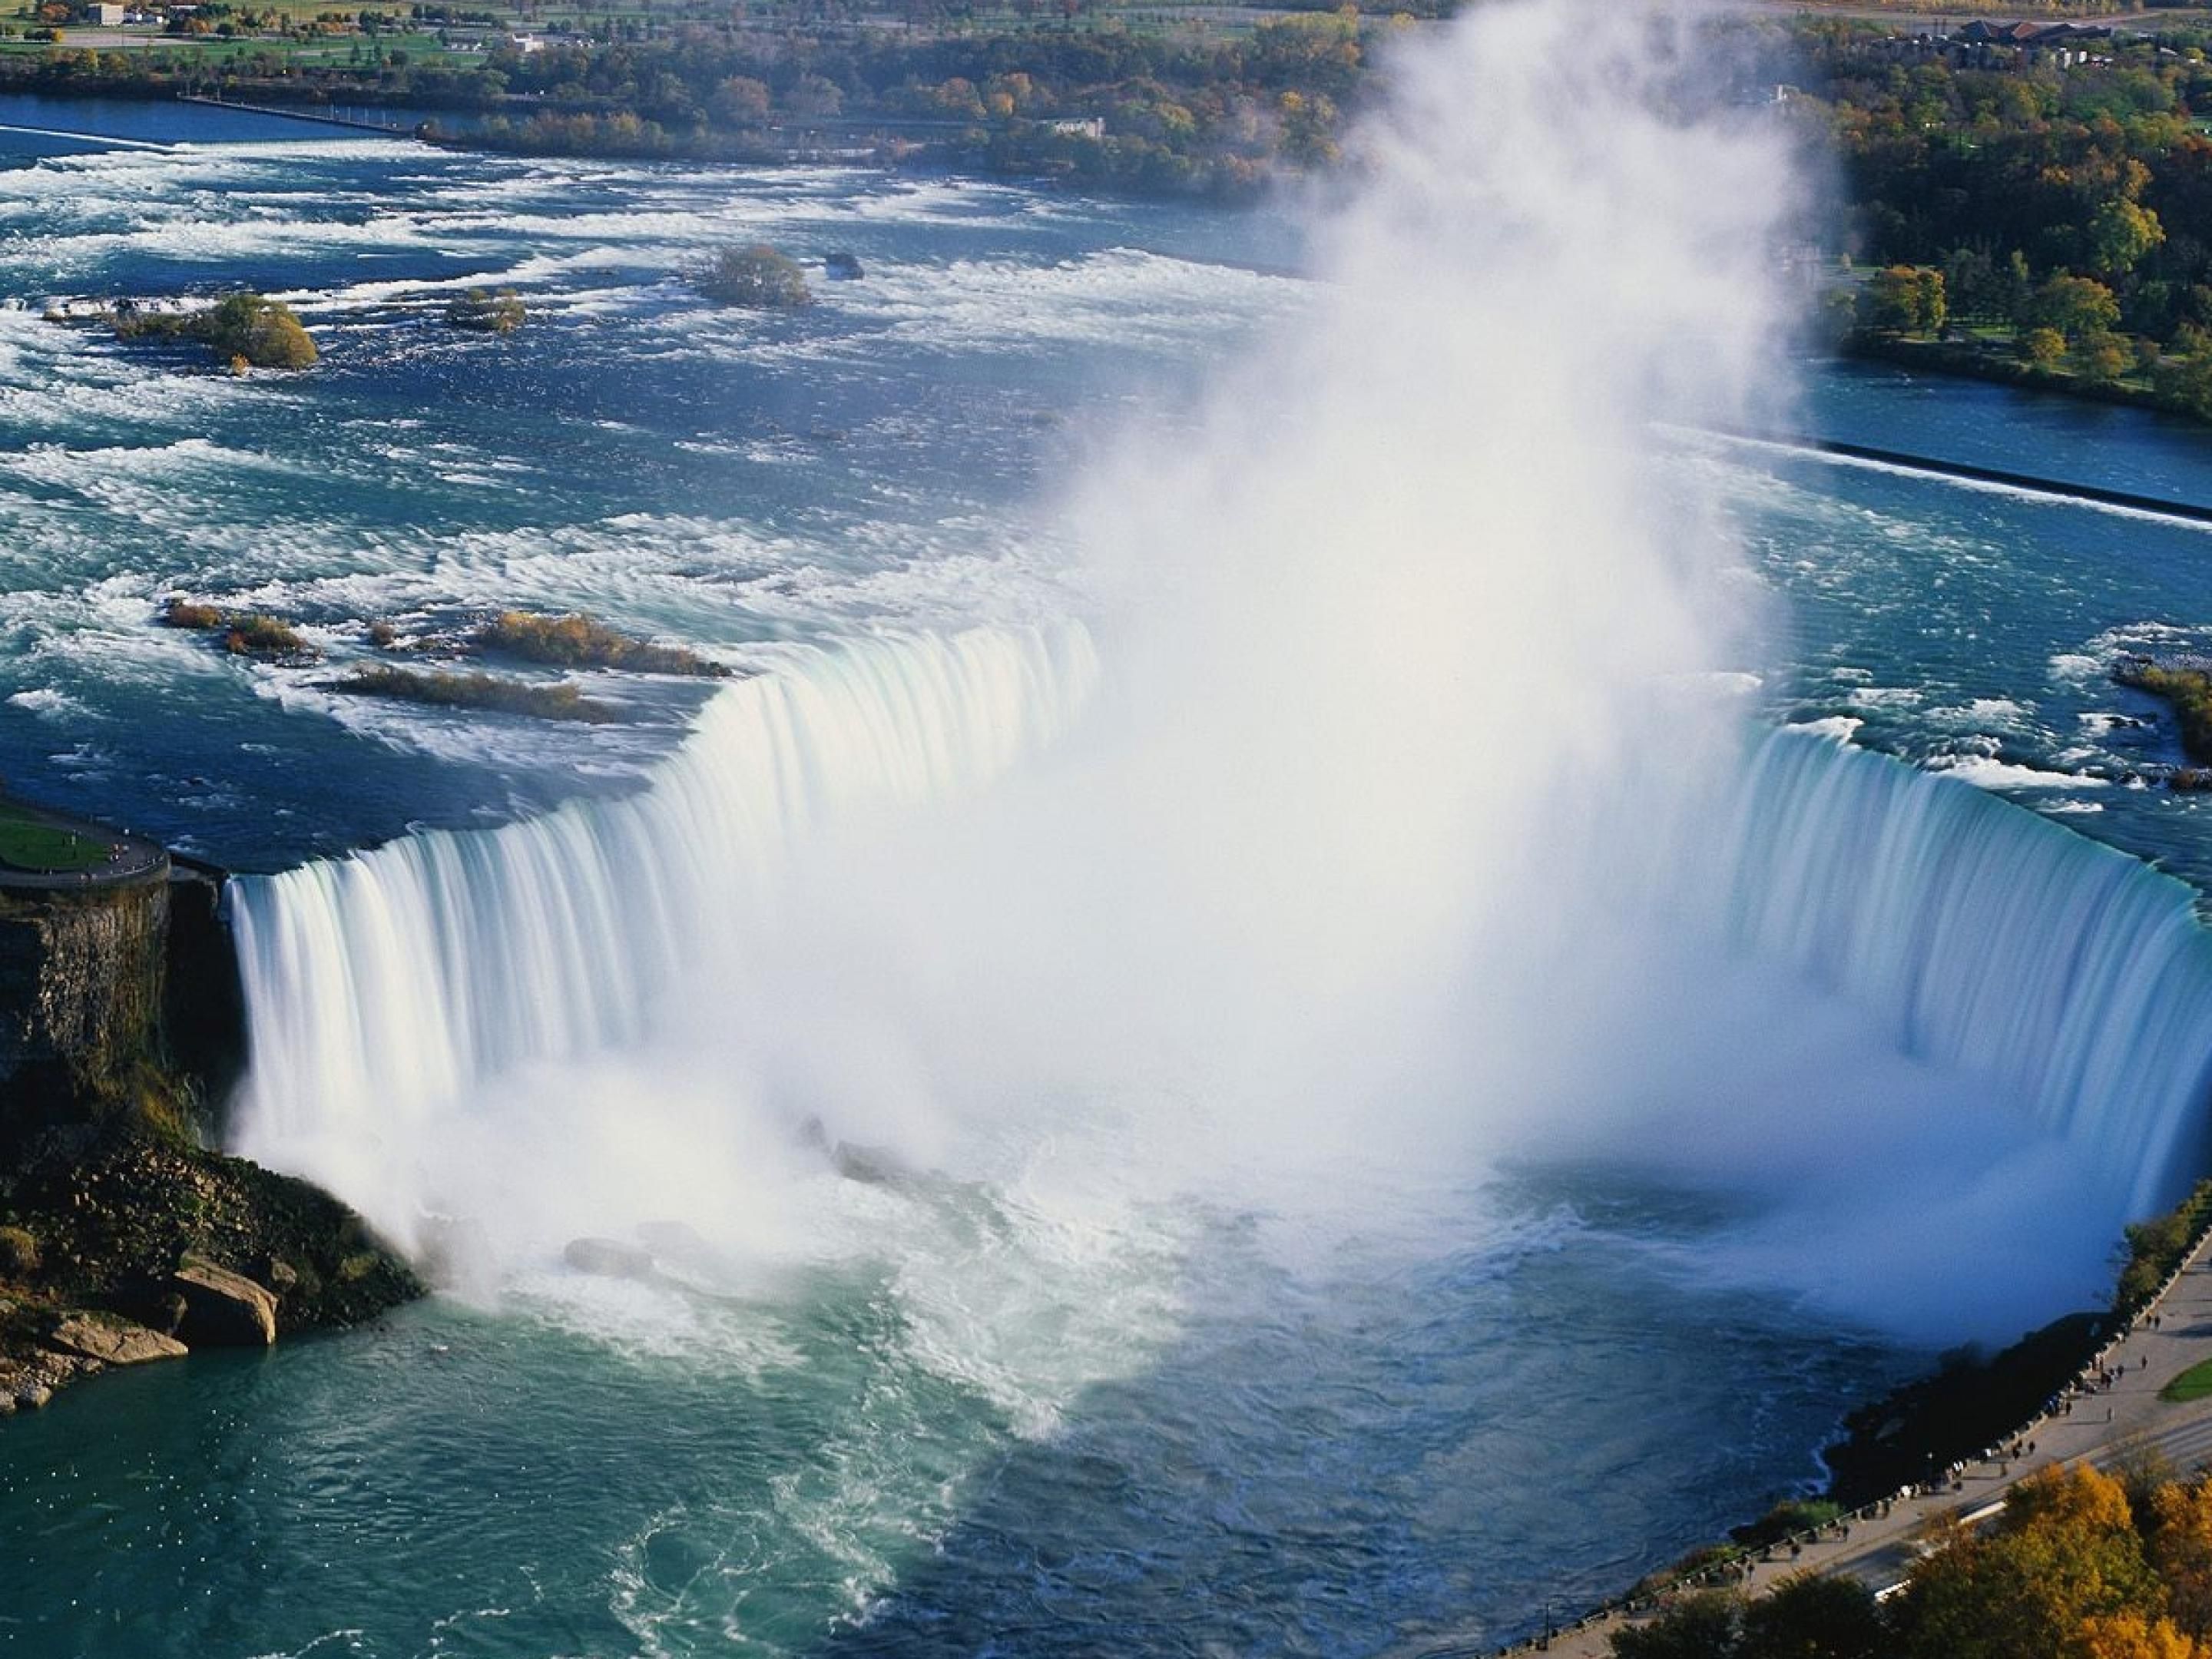 Beautiful Niagara Falls!